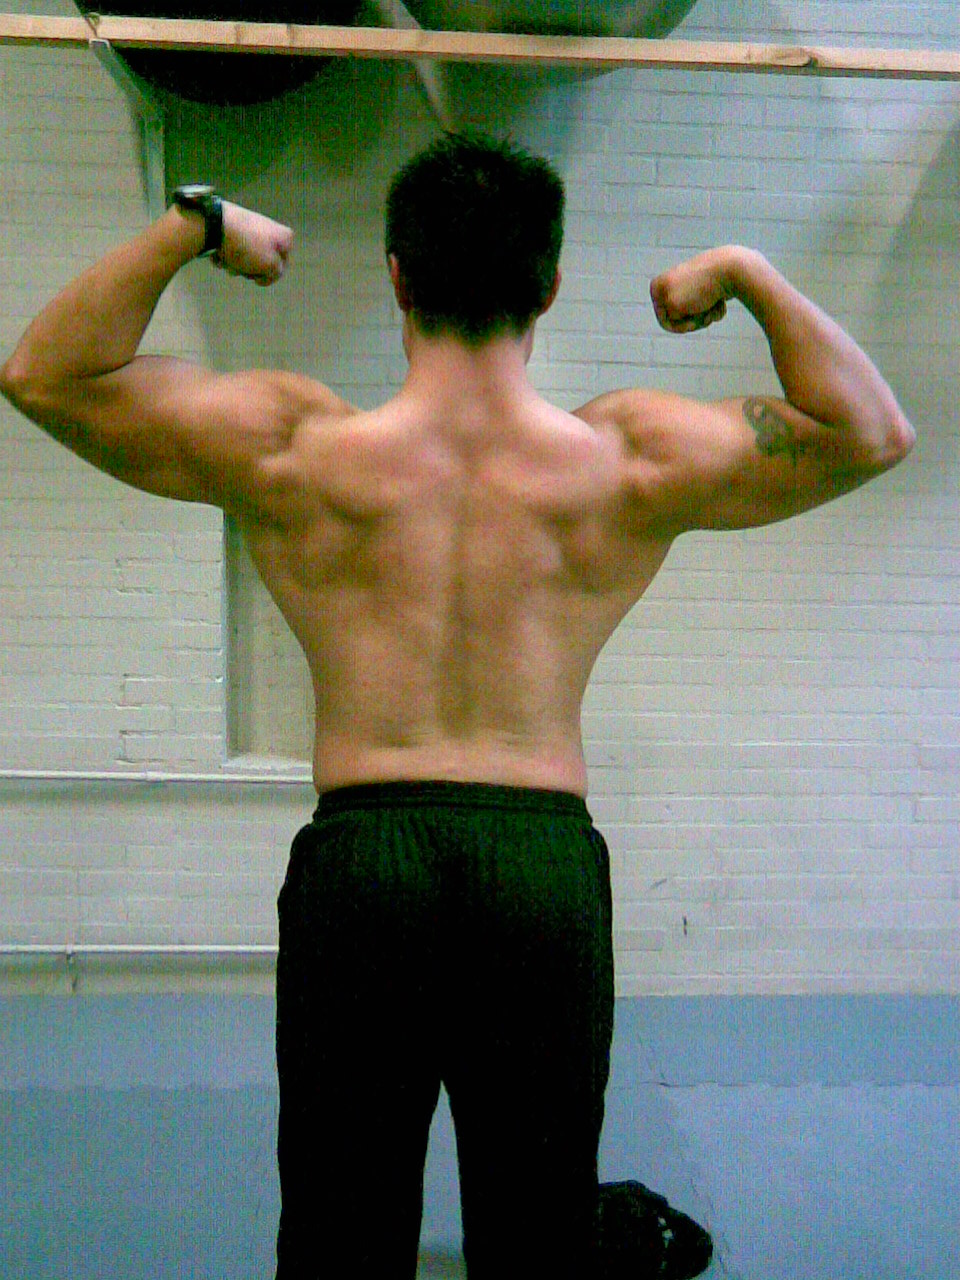 8403-24.09.08 back double biceps.jpg